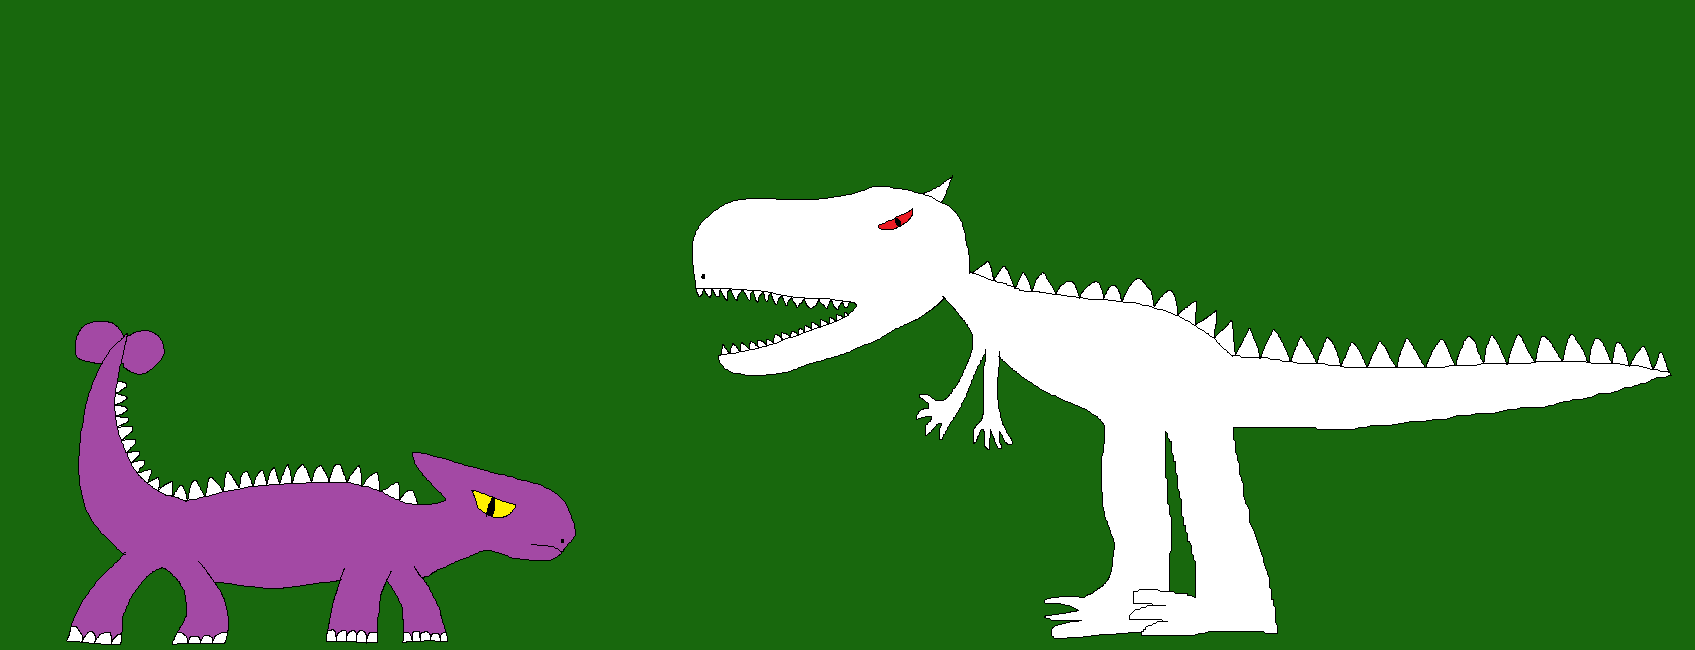 Indominus rex vs Ankylosaurus by Gojirafan1994 on DeviantArt